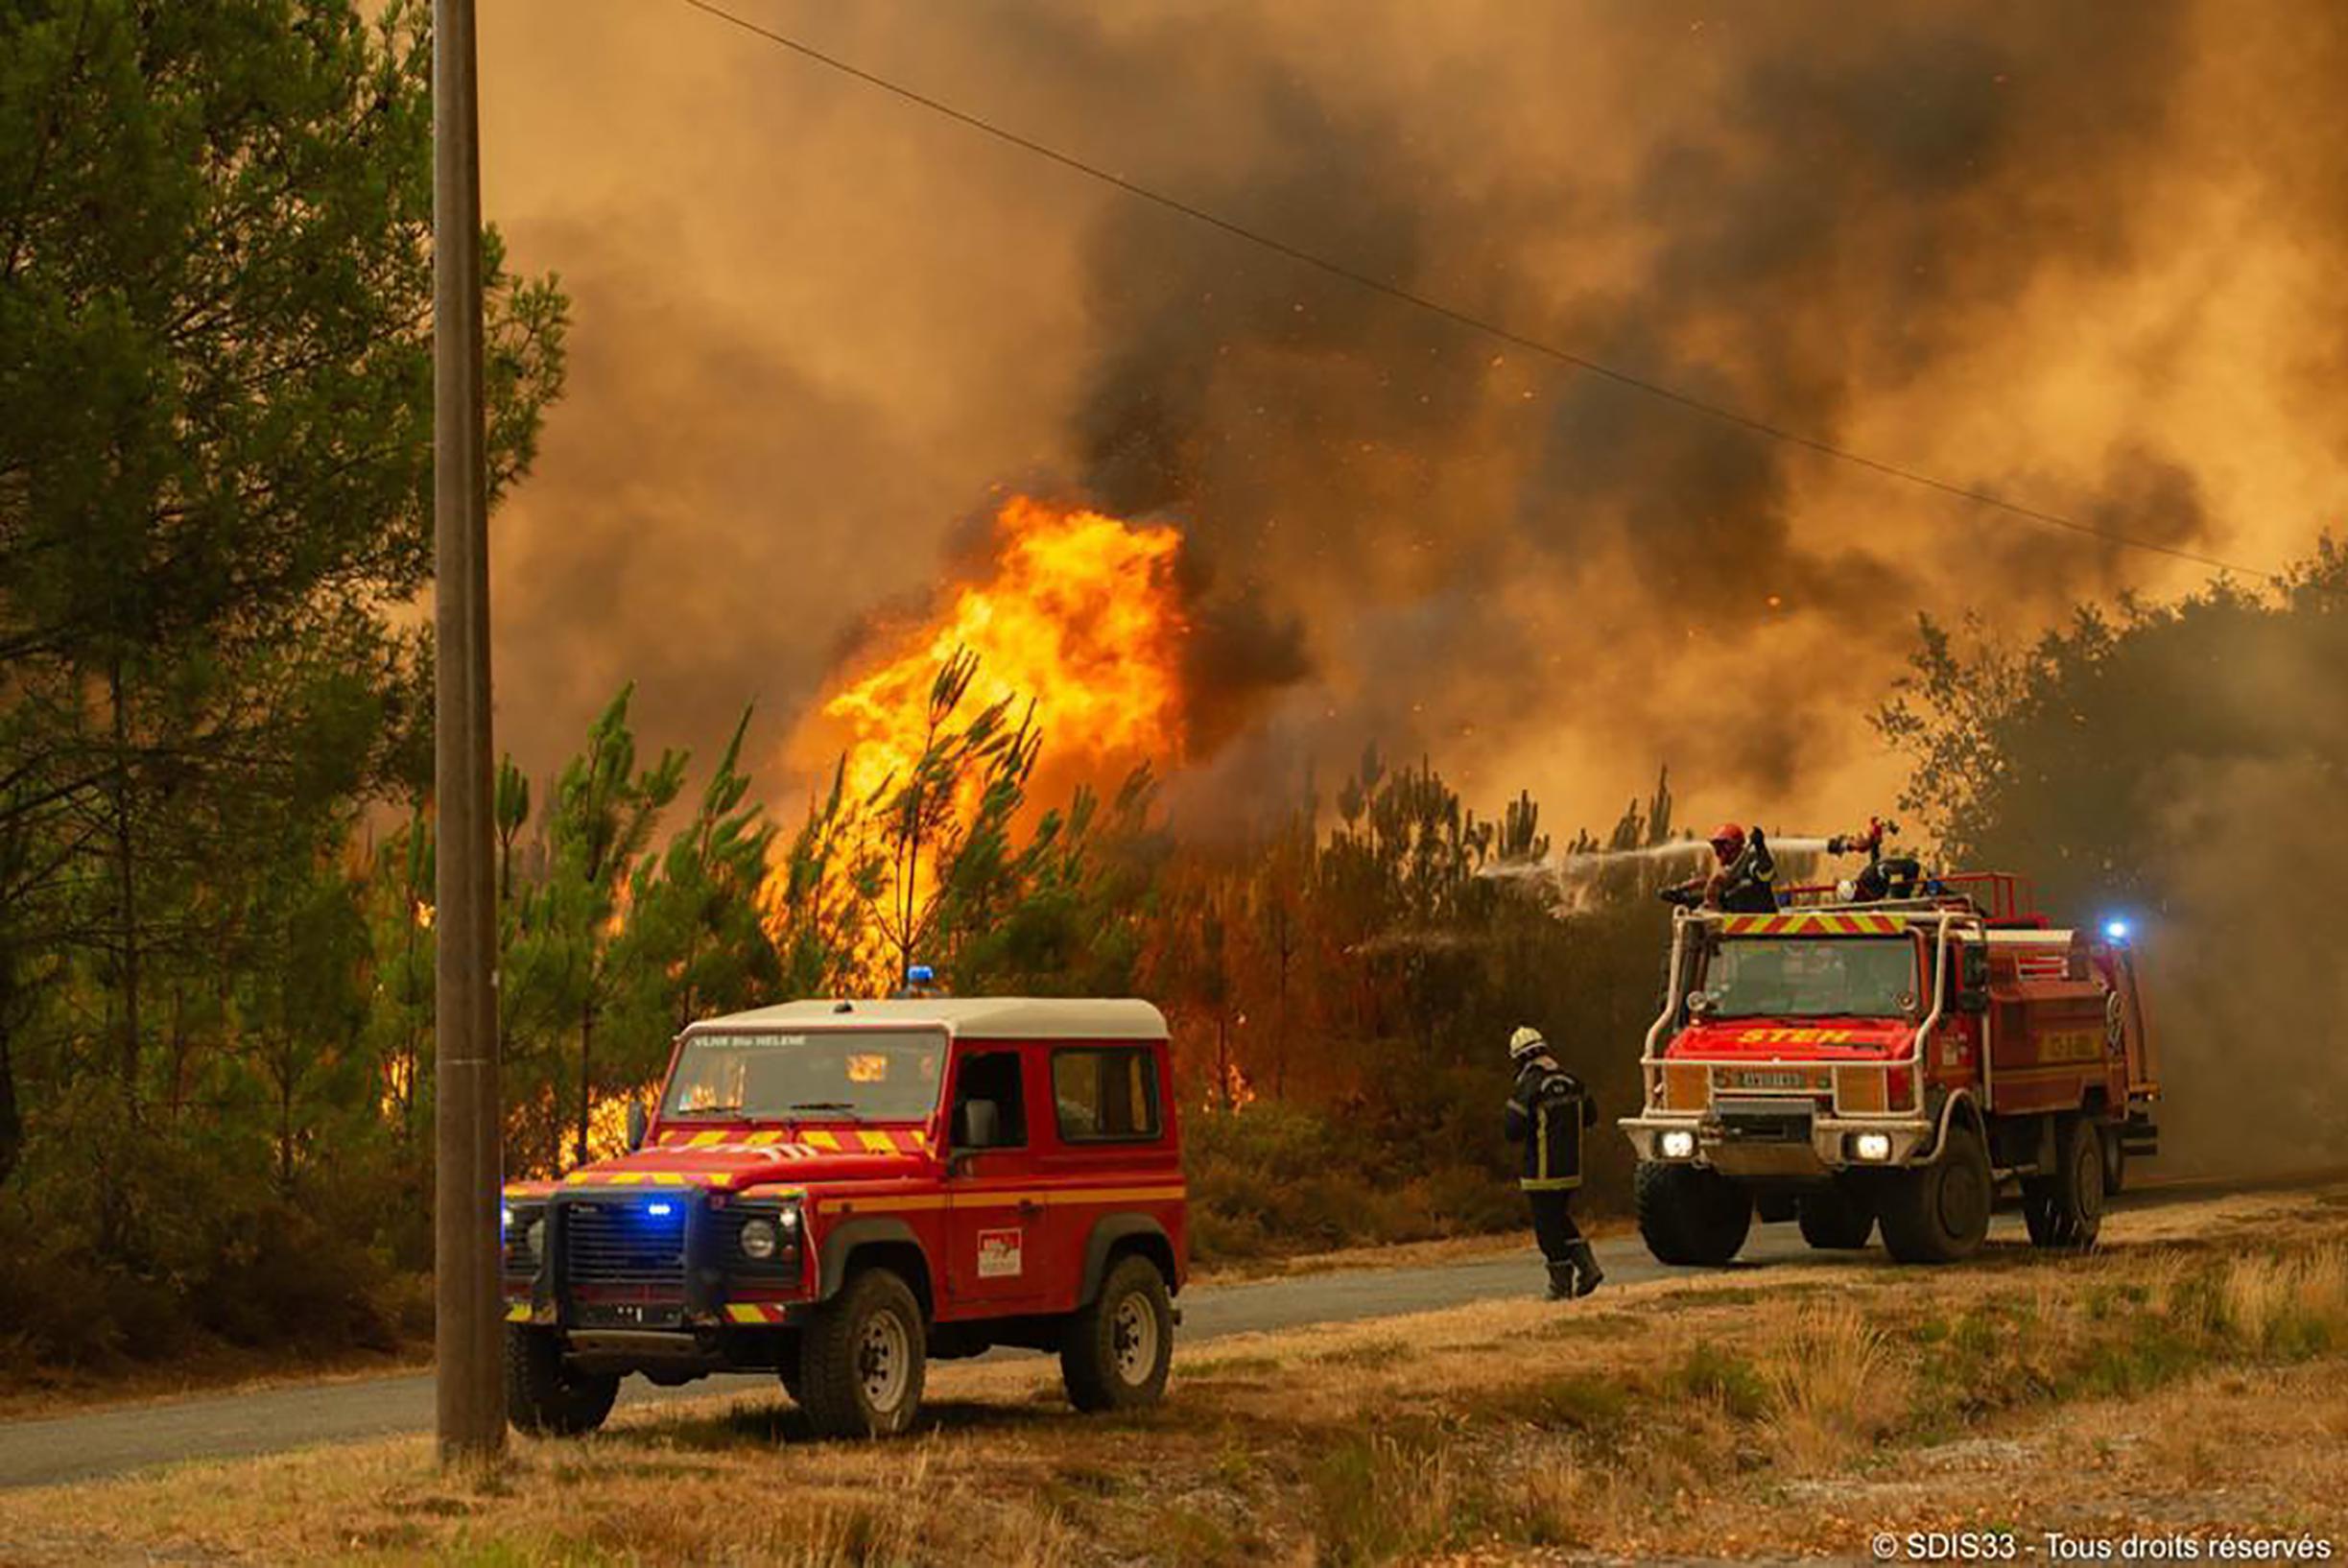 Интенсивные лесные пожары во Франции кажутся неудержимыми, а Германия прислала подкрепление: «словно зверь с мозгами».